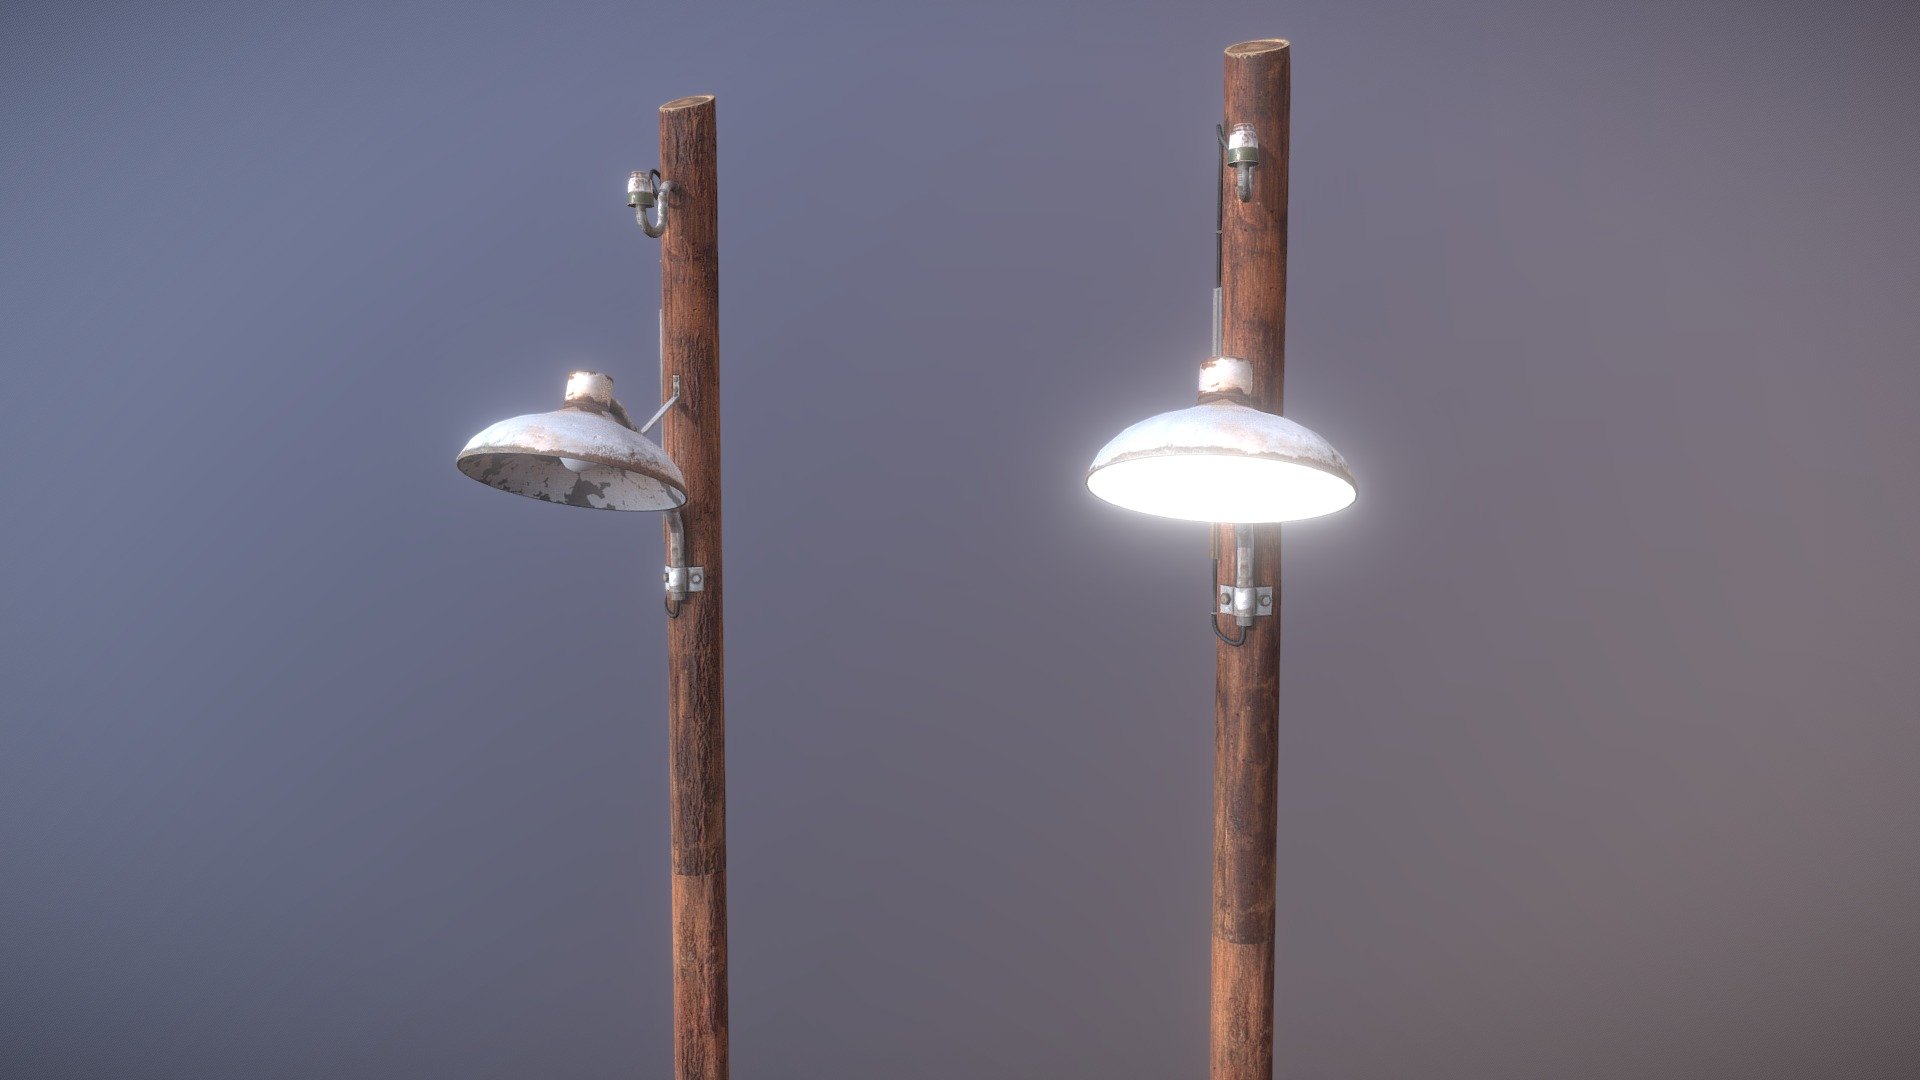 Light Pole